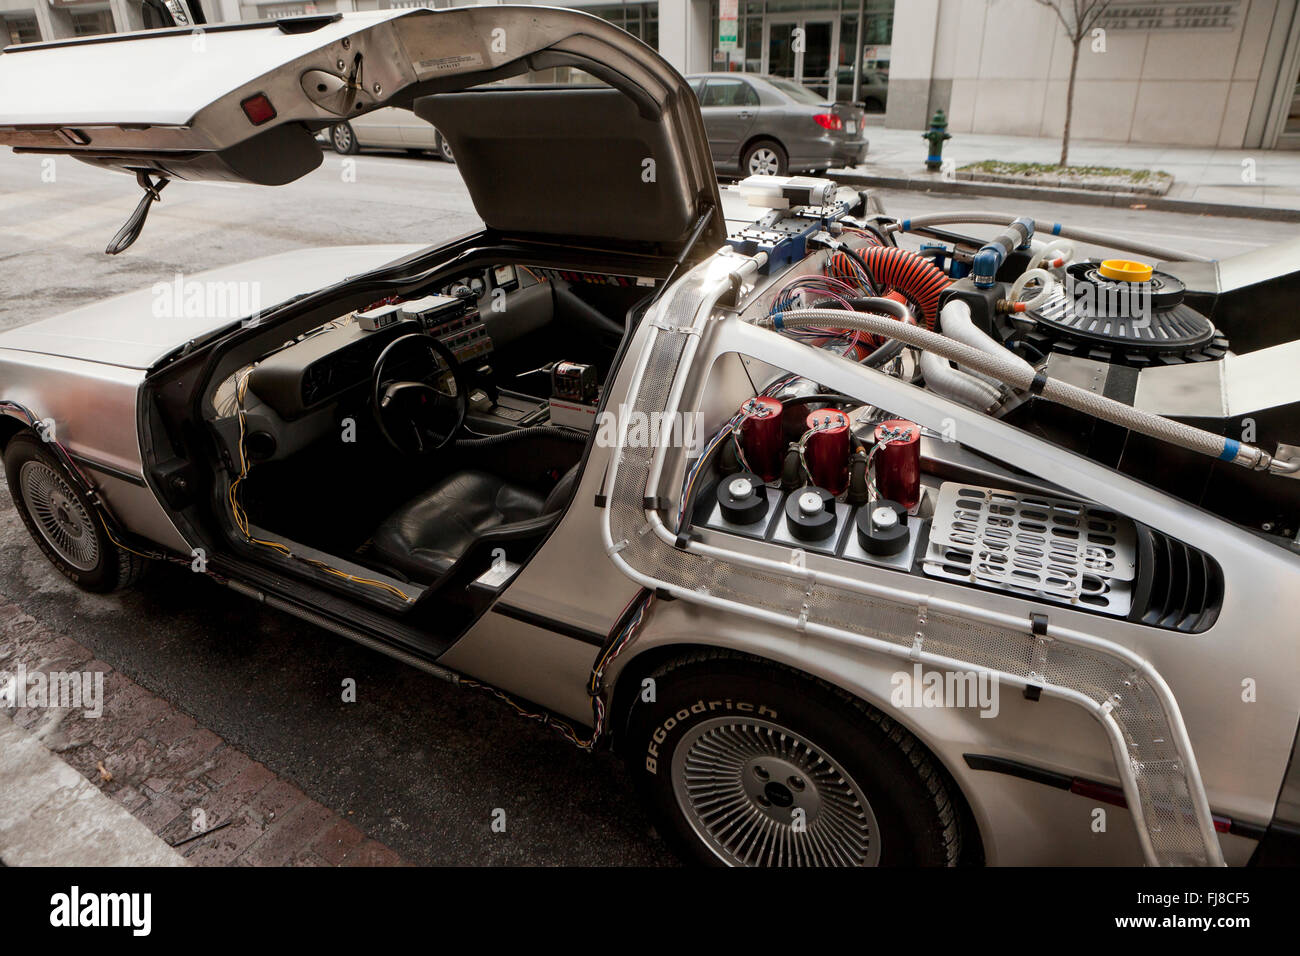 Volver al futuro DeLorean time machine replica - Washington, DC, EE.UU. Foto de stock